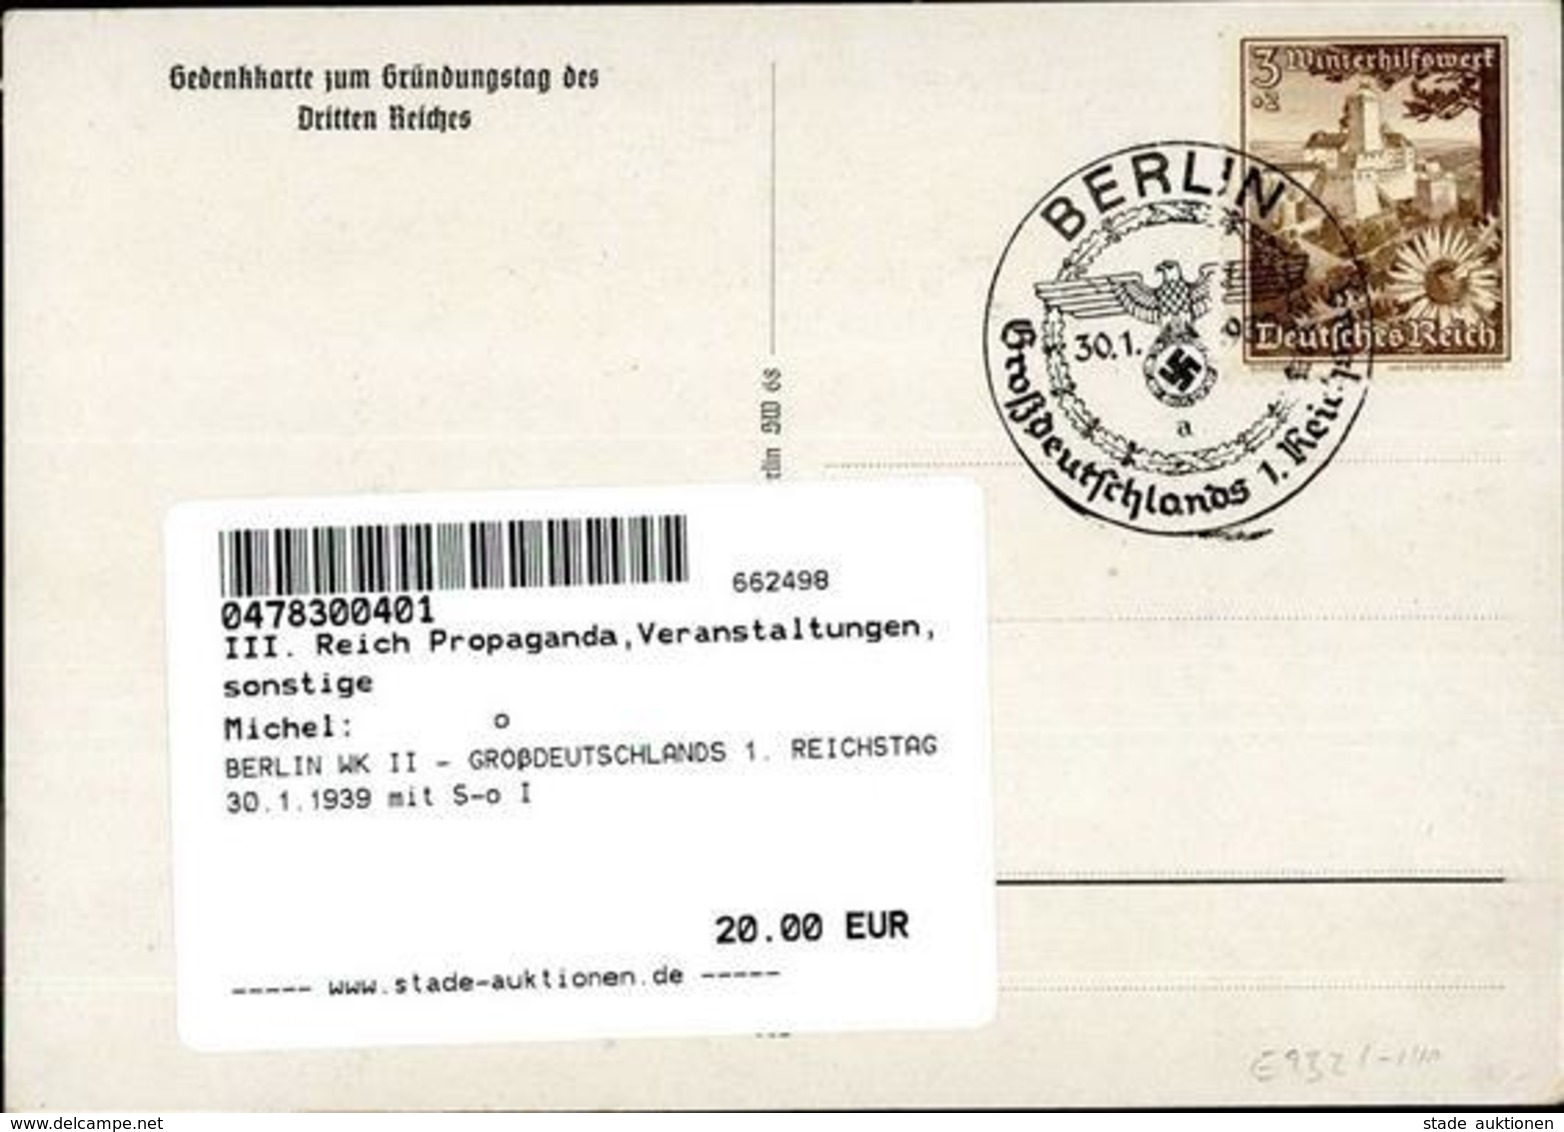 BERLIN WK II - GROßDEUTSCHLANDS 1. REICHSTAG 30.1.1939 Mit S-o I - Weltkrieg 1939-45